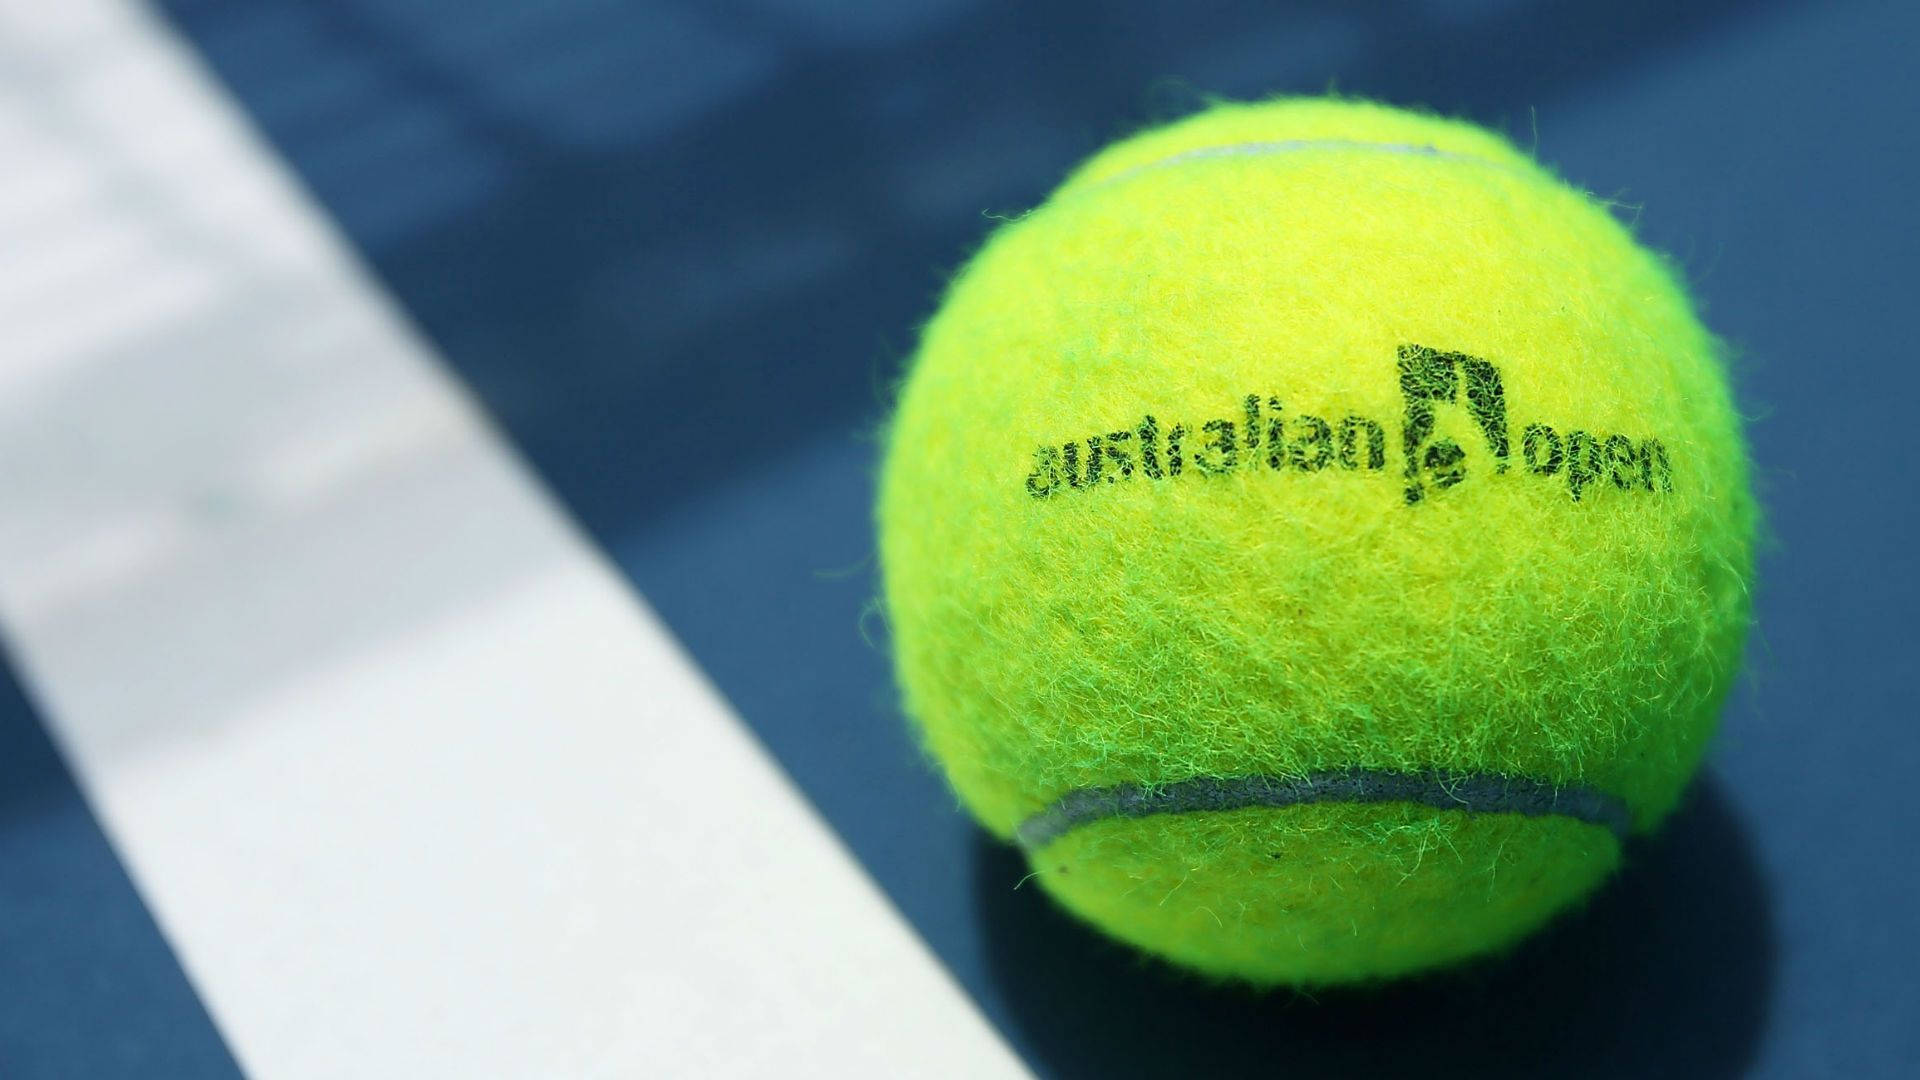 Caption: Intense Focus: Close Shot Of Tennis Ball At Australian Open Background